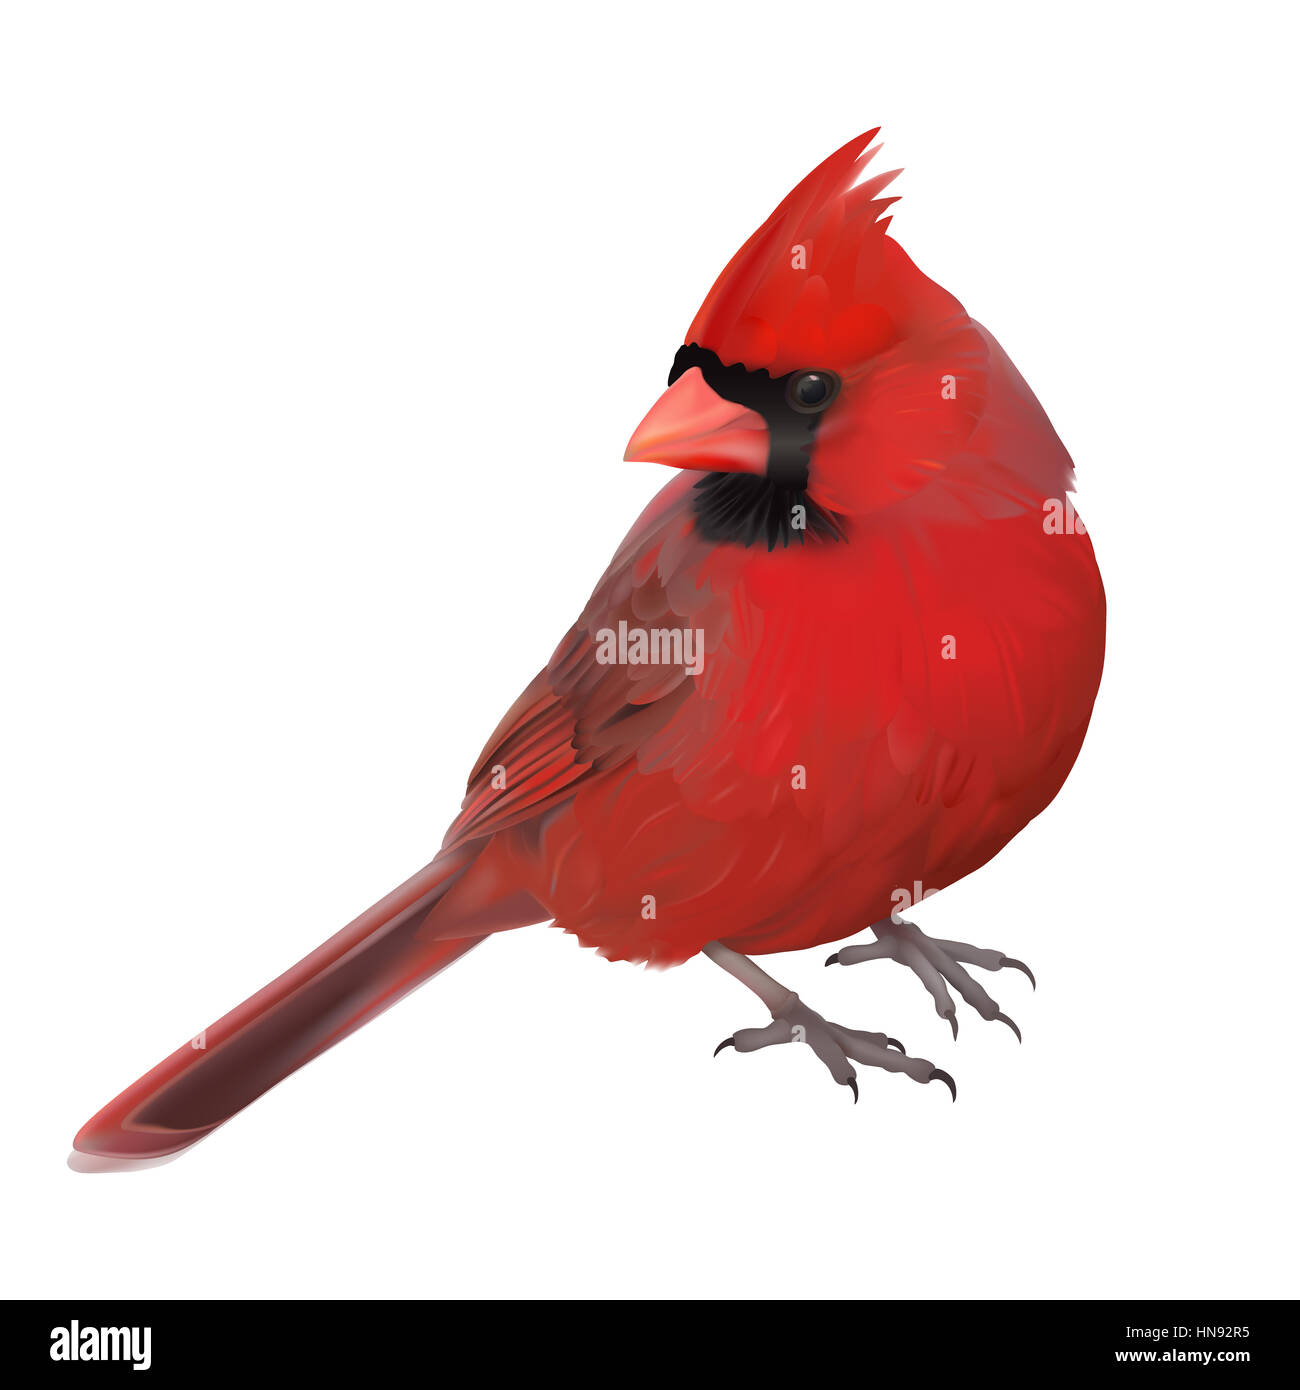 Northern Cardinal - Cardinalis cardinalis. A male bird showing off its beautiful red plumage. Stock Photo